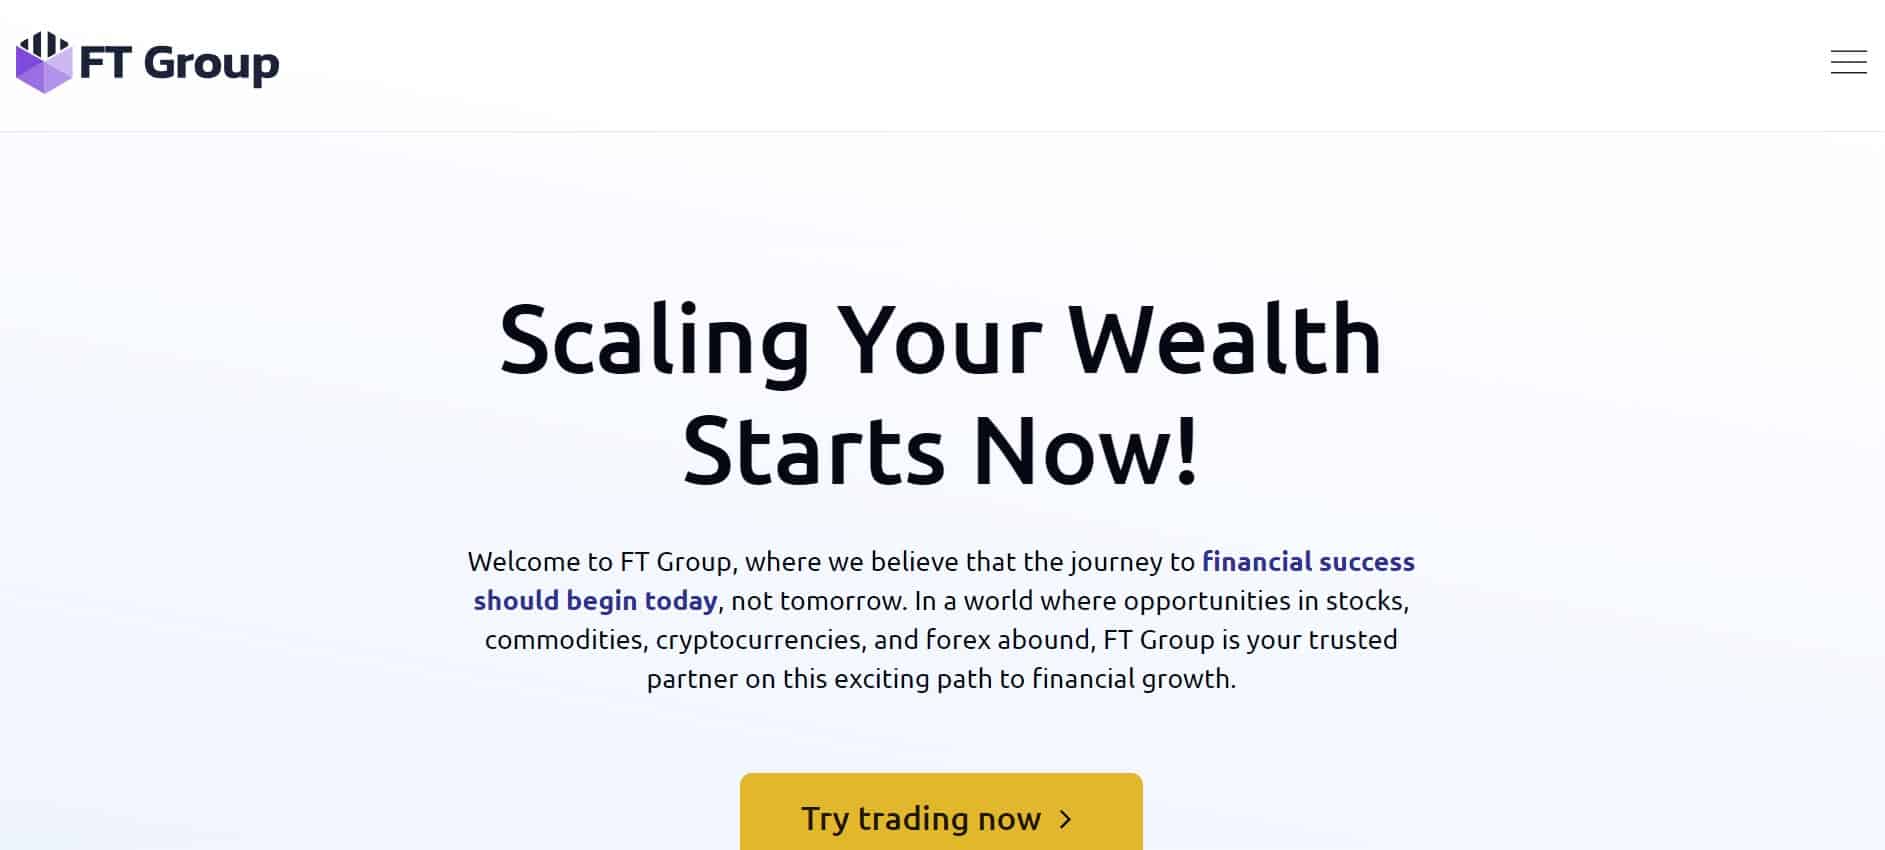 FT Group website